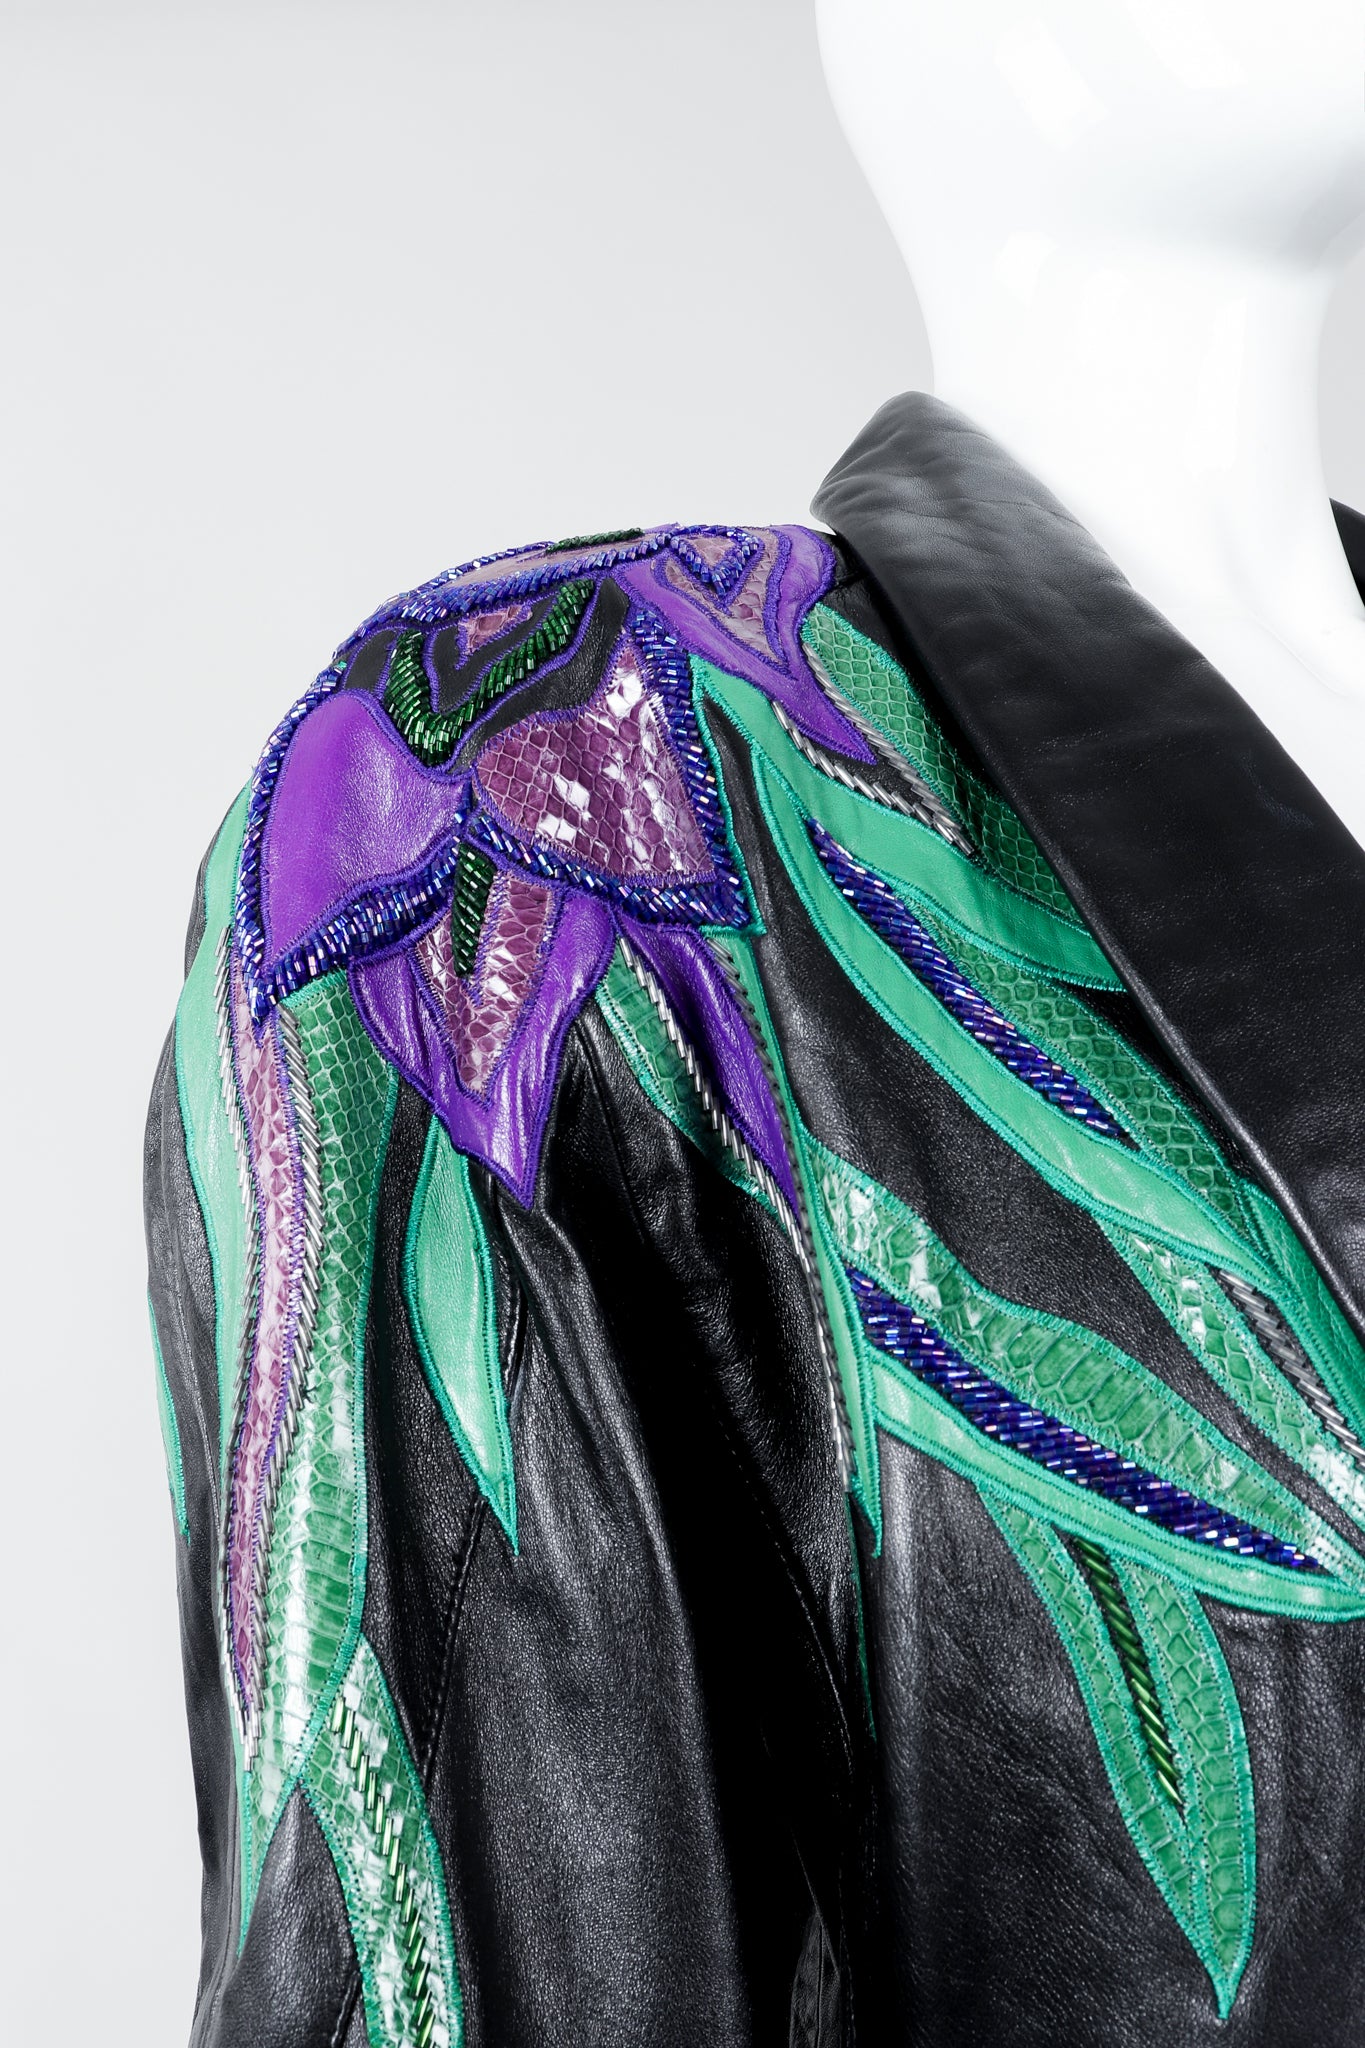 Vintage Erez Flaming Iris Leather Jacket on Mannequin shoulder detail at Recess